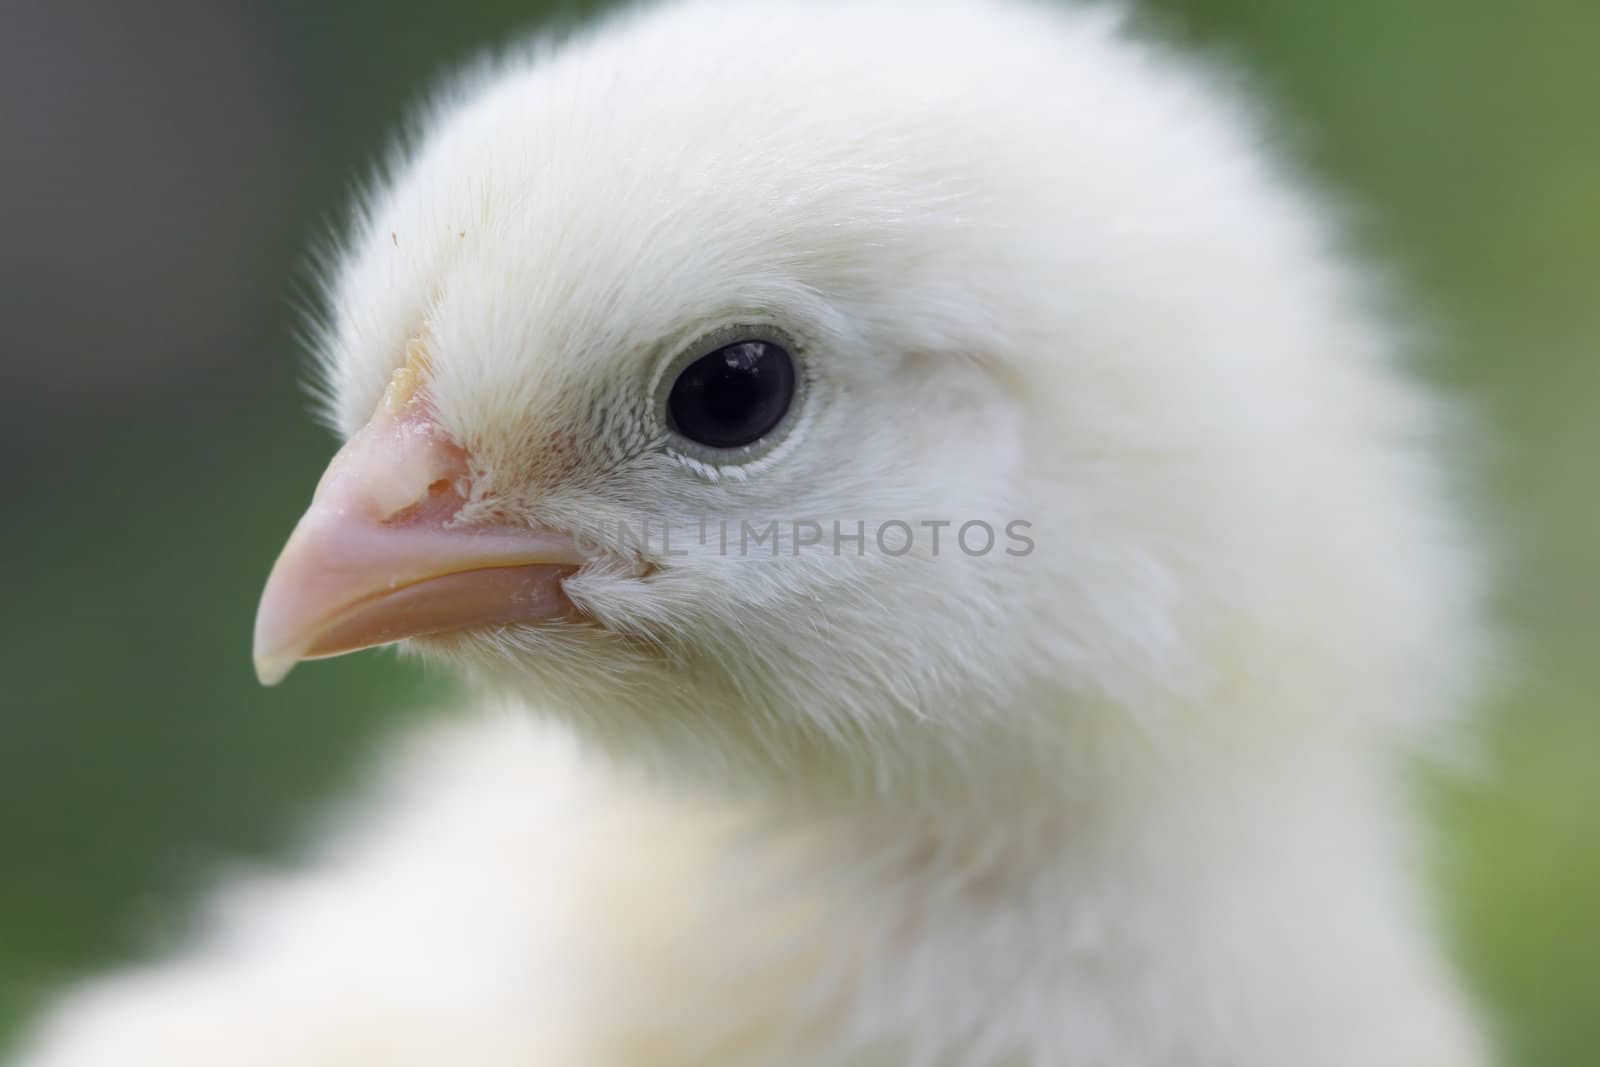 Baby chick close up shot by jarenwicklund